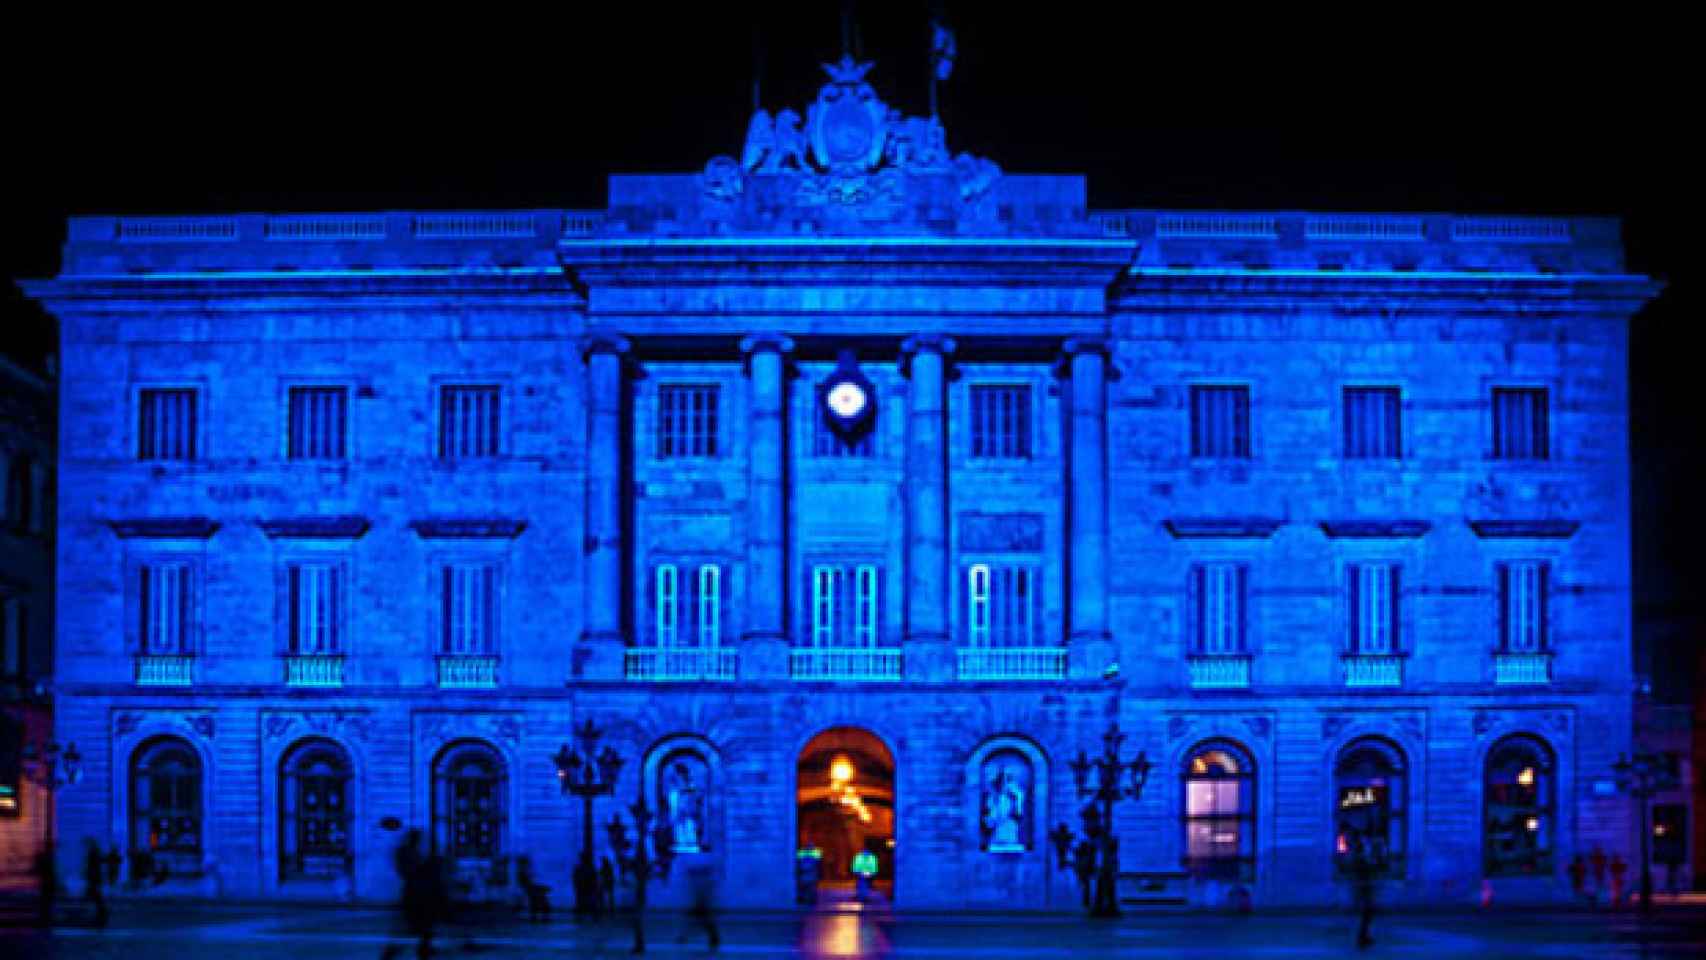 La fachada del Ayuntamiento de Barcelona se ha teñido de azul para dar visibilidad al autismo / Conéctate al Azul